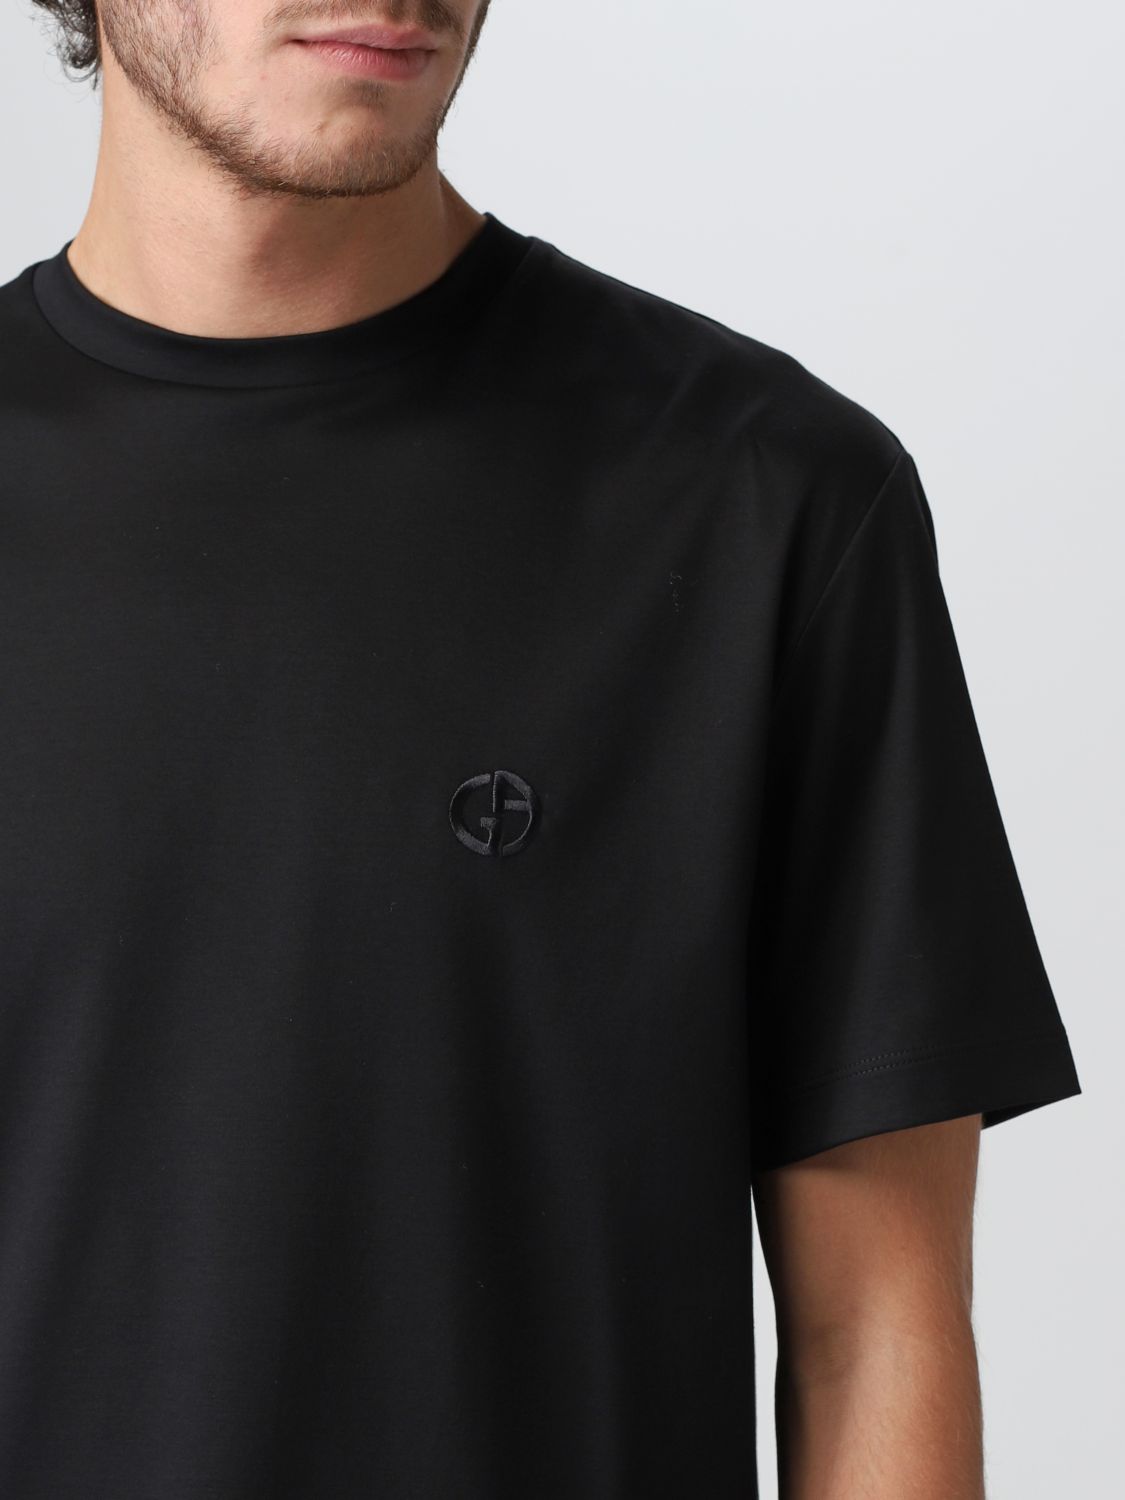 Tシャツ ジョルジオ アルマーニ: Tシャツ Giorgio Armani メンズ ブラック 5